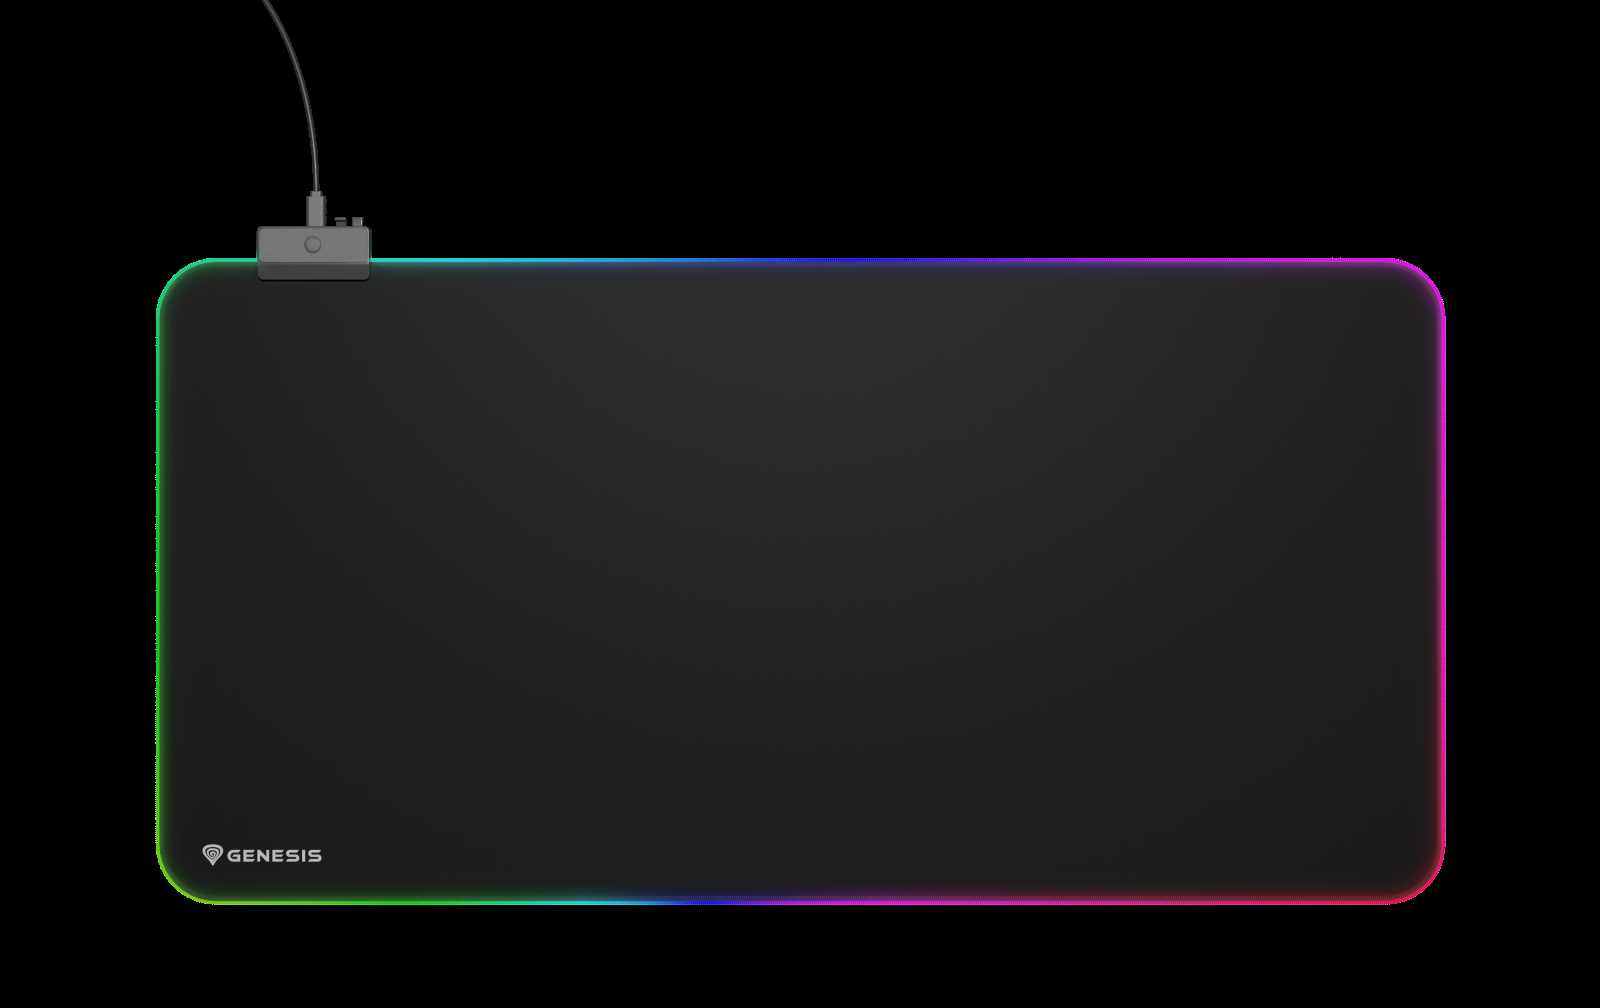 Podložka pod myš Genesis Boron 500 XXL s RGB podsvícením pro nadšené hráče počítačových her